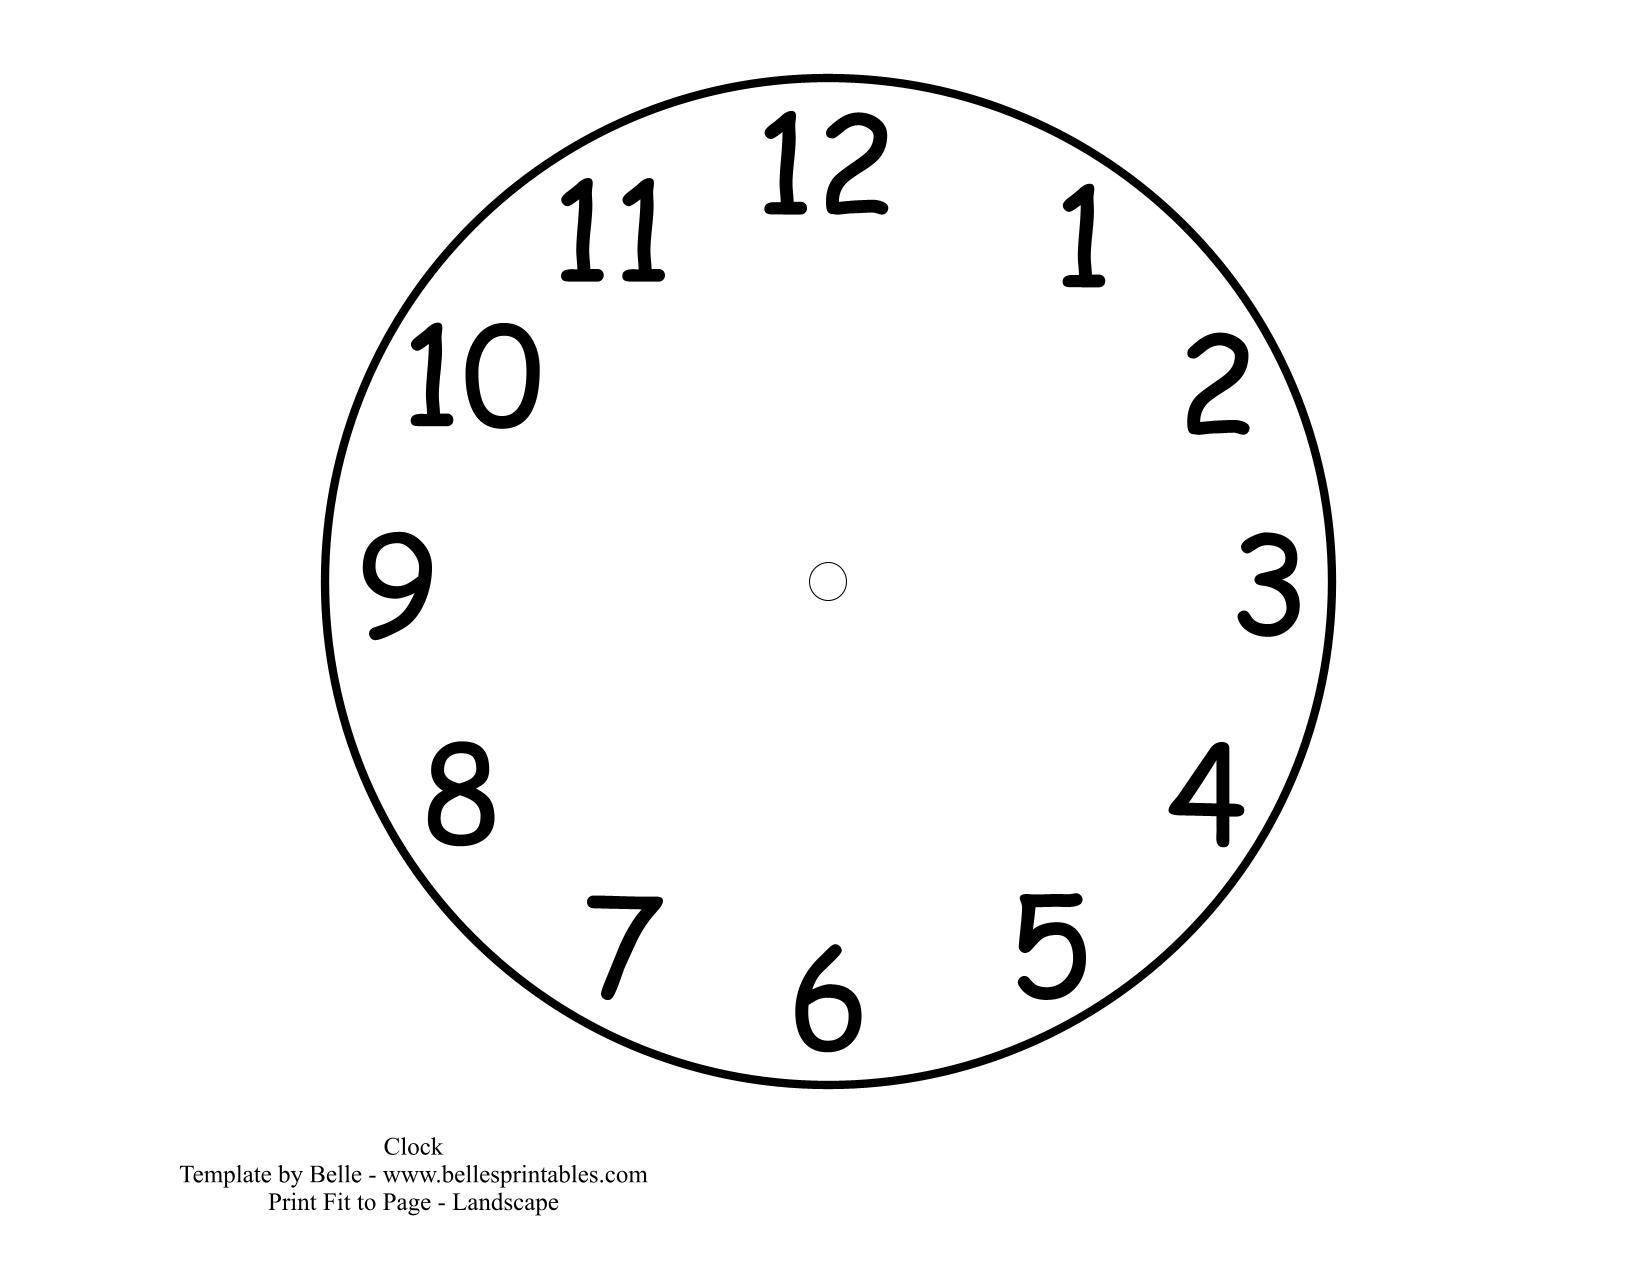 9 часов 39. Циферблат часов. Макет часов для печати. Шаблон часов для детей. Макет часов для детей.